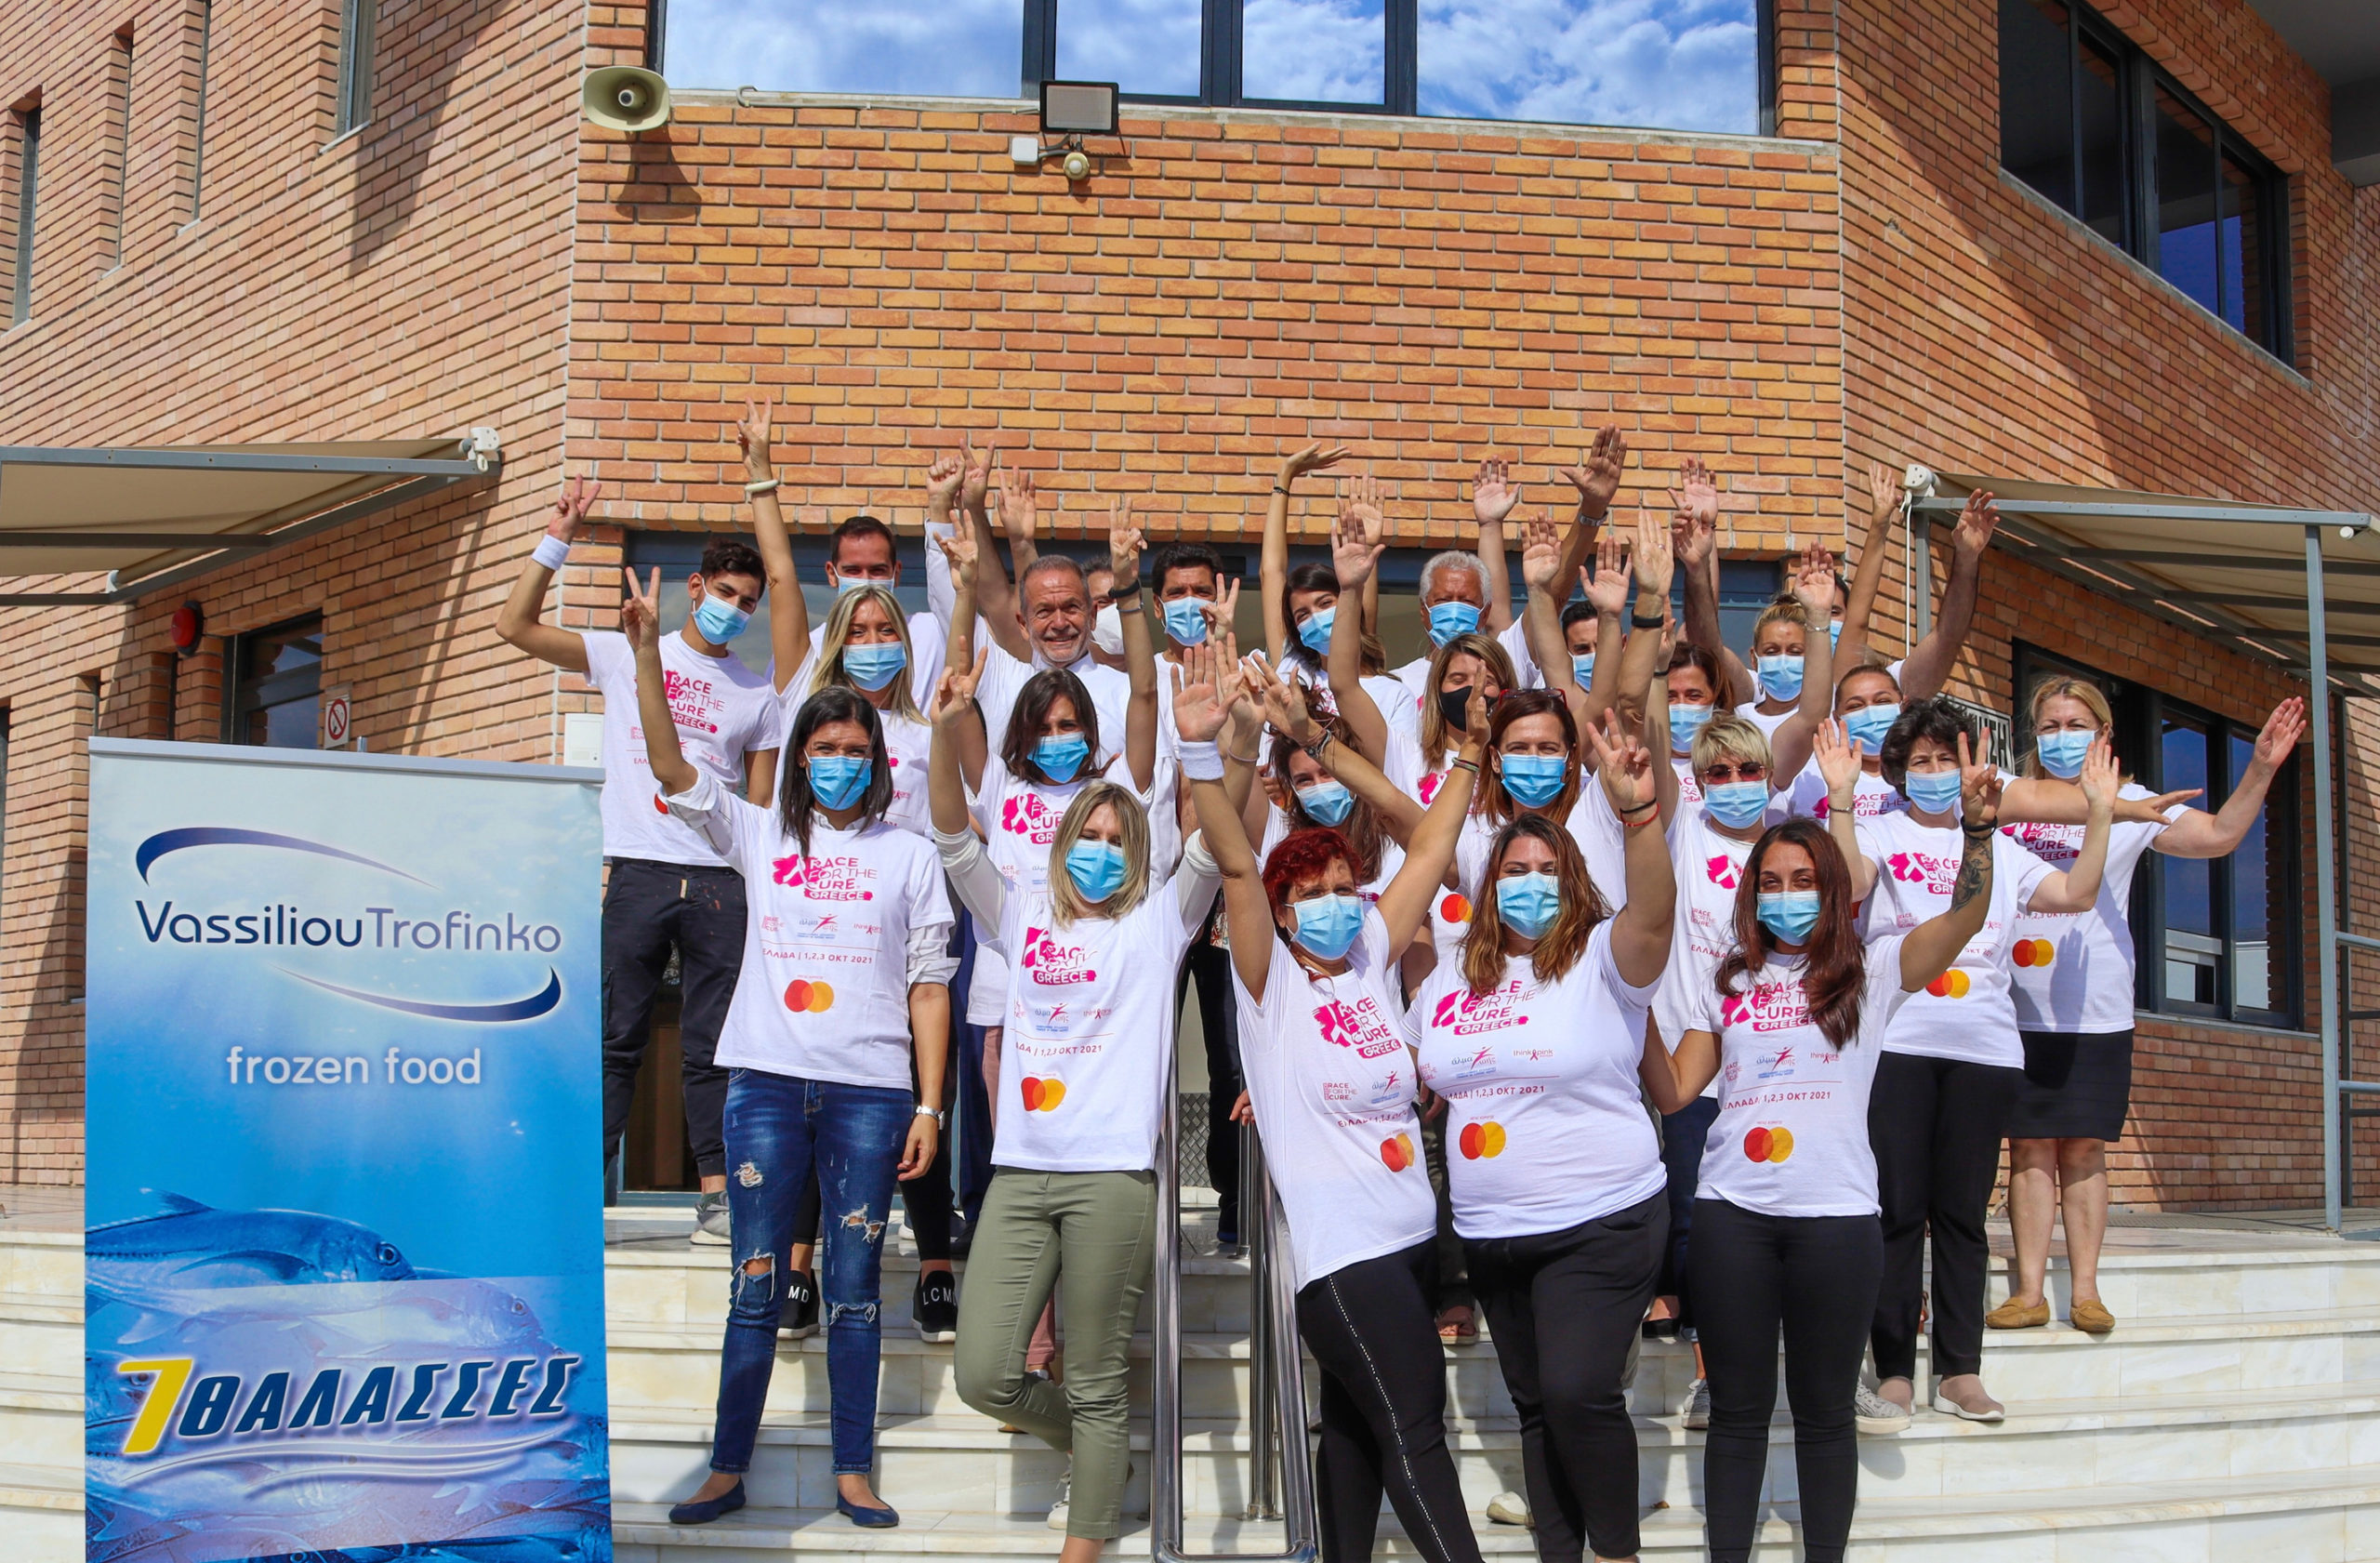 Η ομάδα συμμετεχόντων της ΒΑΣΙΛΕΙΟΥ ΤΡΟΦΙΝΚΟ στον αγώνα Race for the Cure, με τα συλλεκτικά t-shirts της διοργάνωσης, μπροστά στην είσοδο του εργοστασίου στη Μαγούλα Αττικής.